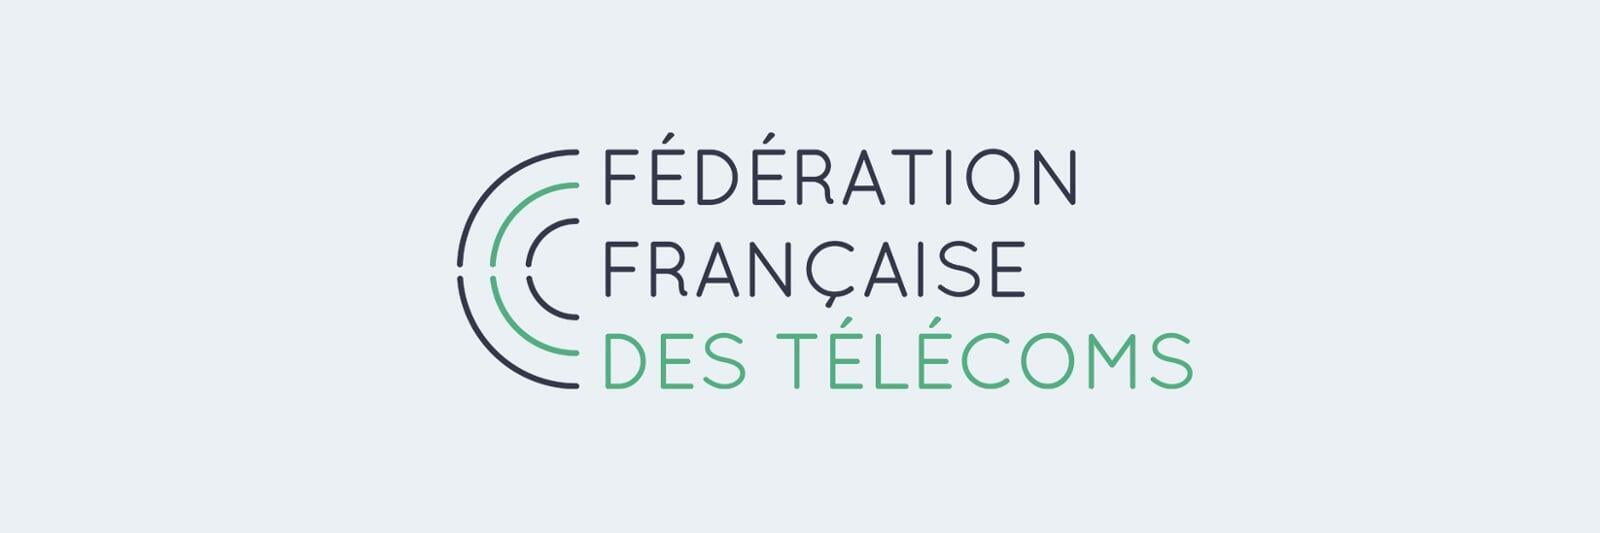 Fédération Française des Télécoms